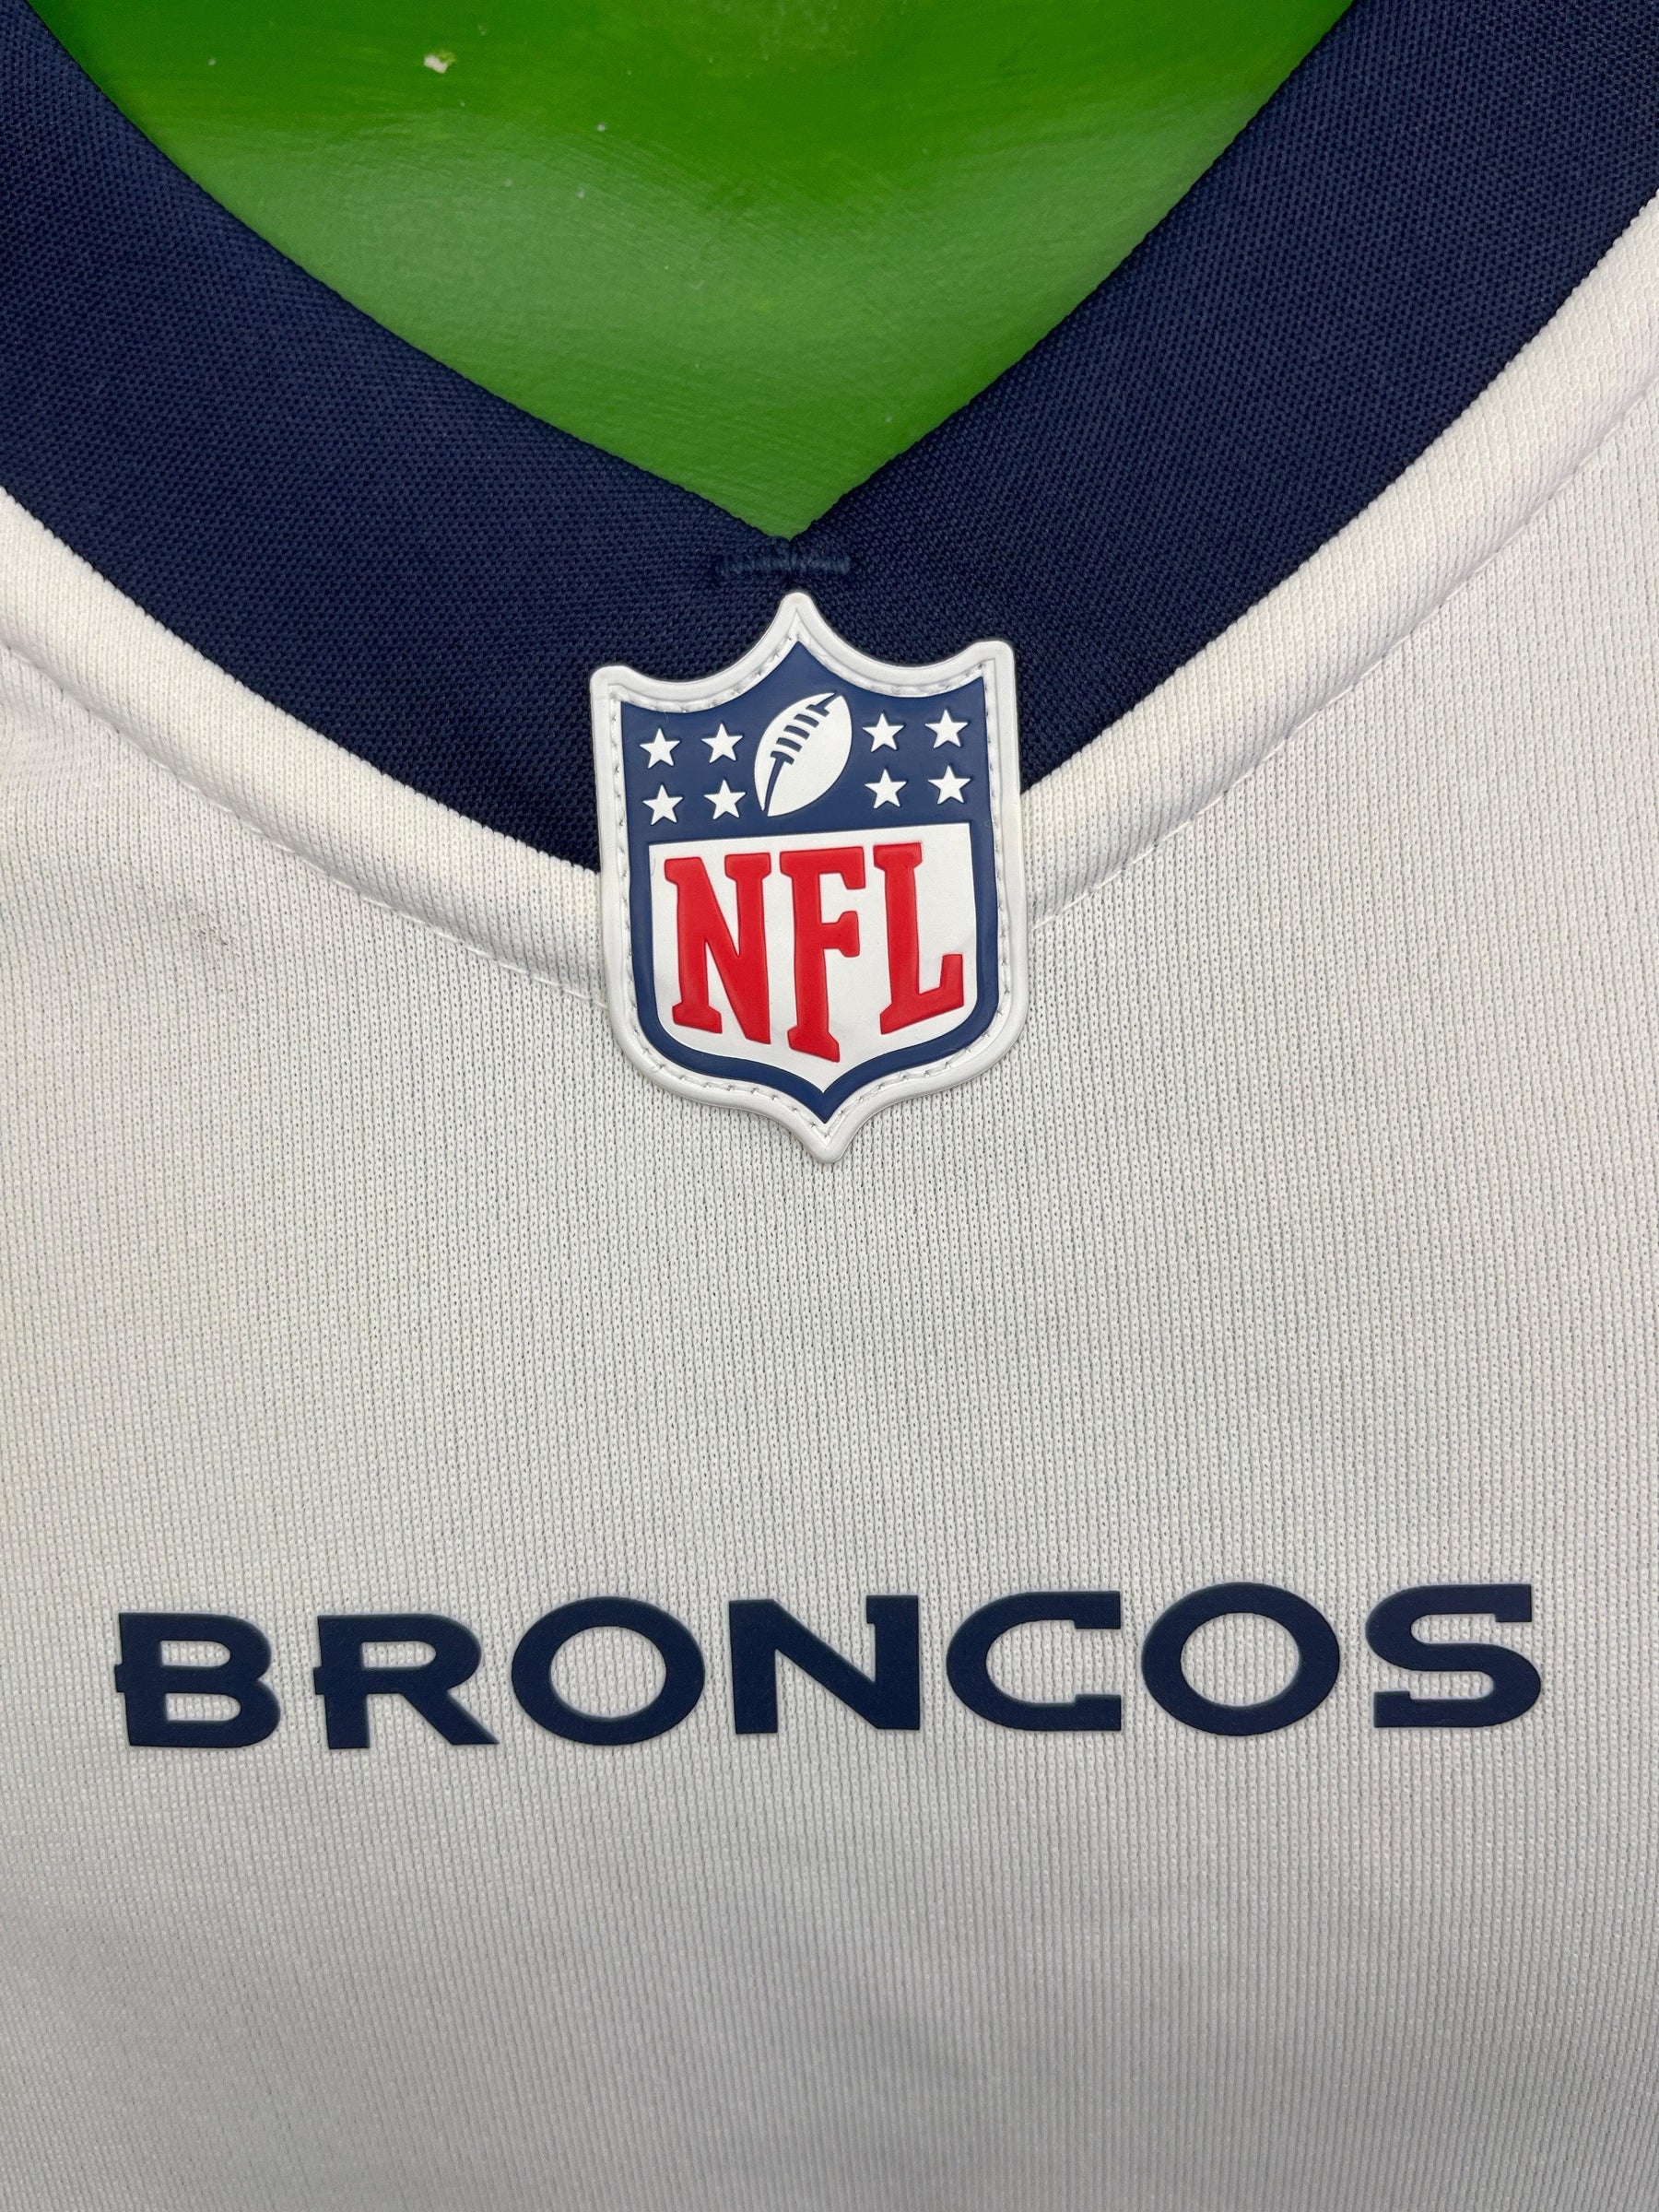 Nike Men's Denver Broncos Russell Wilson #3 White T-Shirt